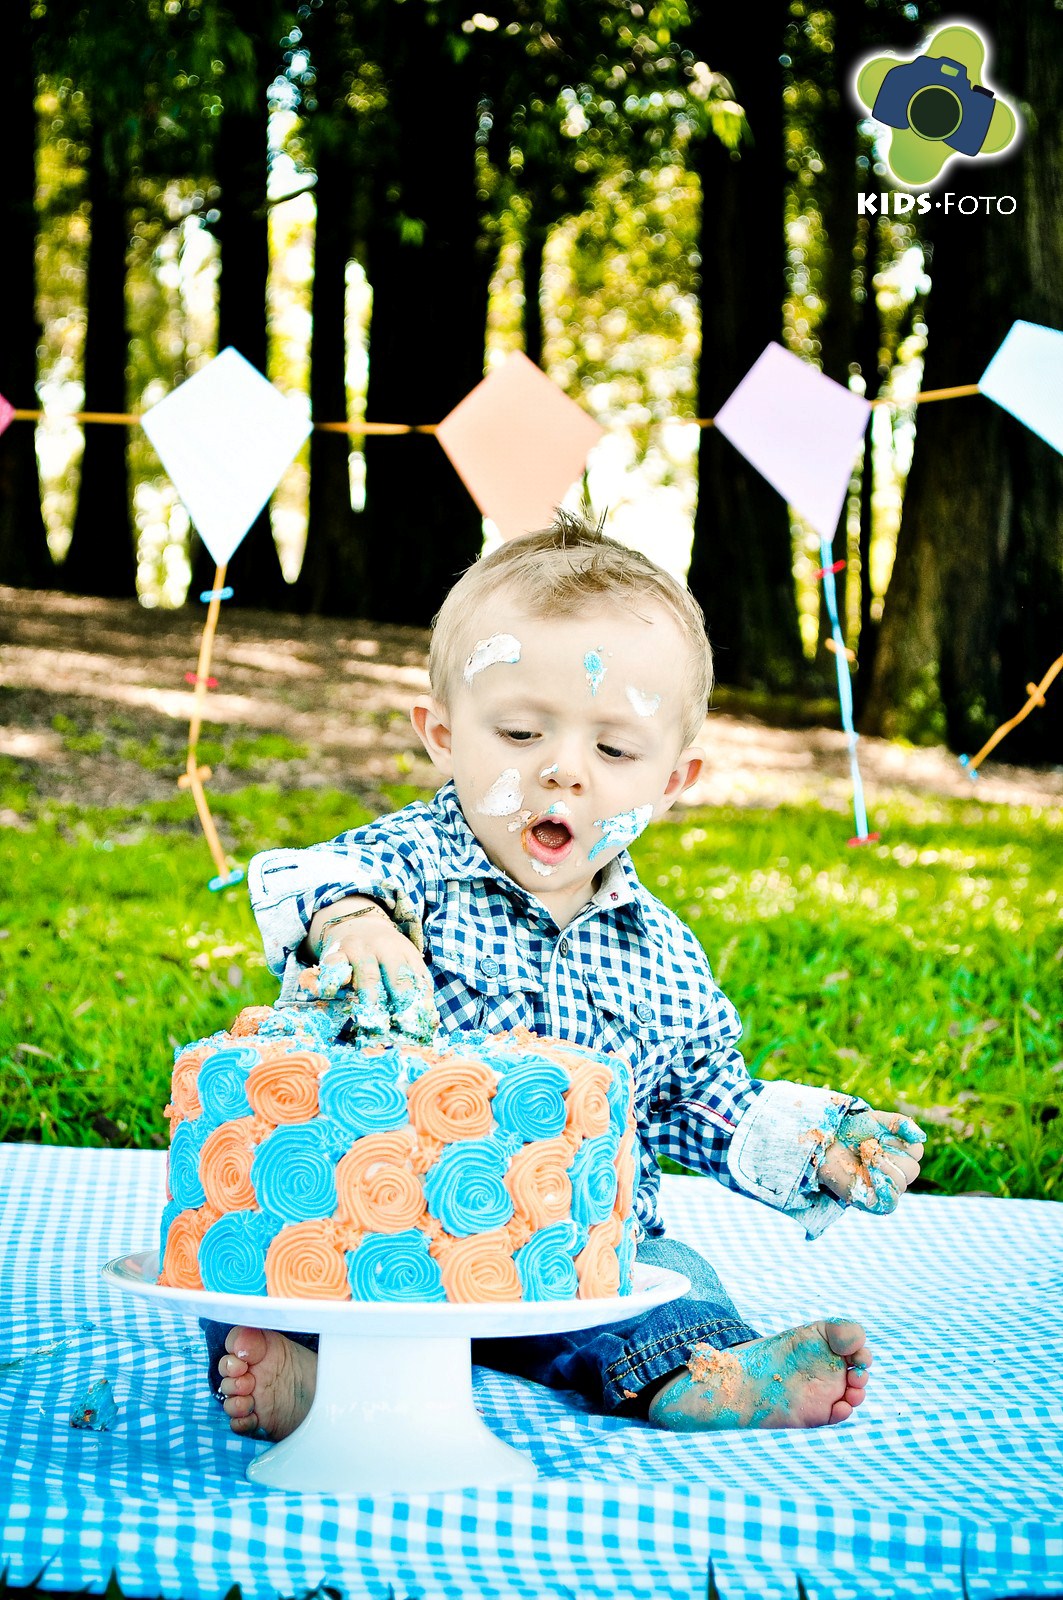 Smash The Cake do Dudu, por Kids Foto